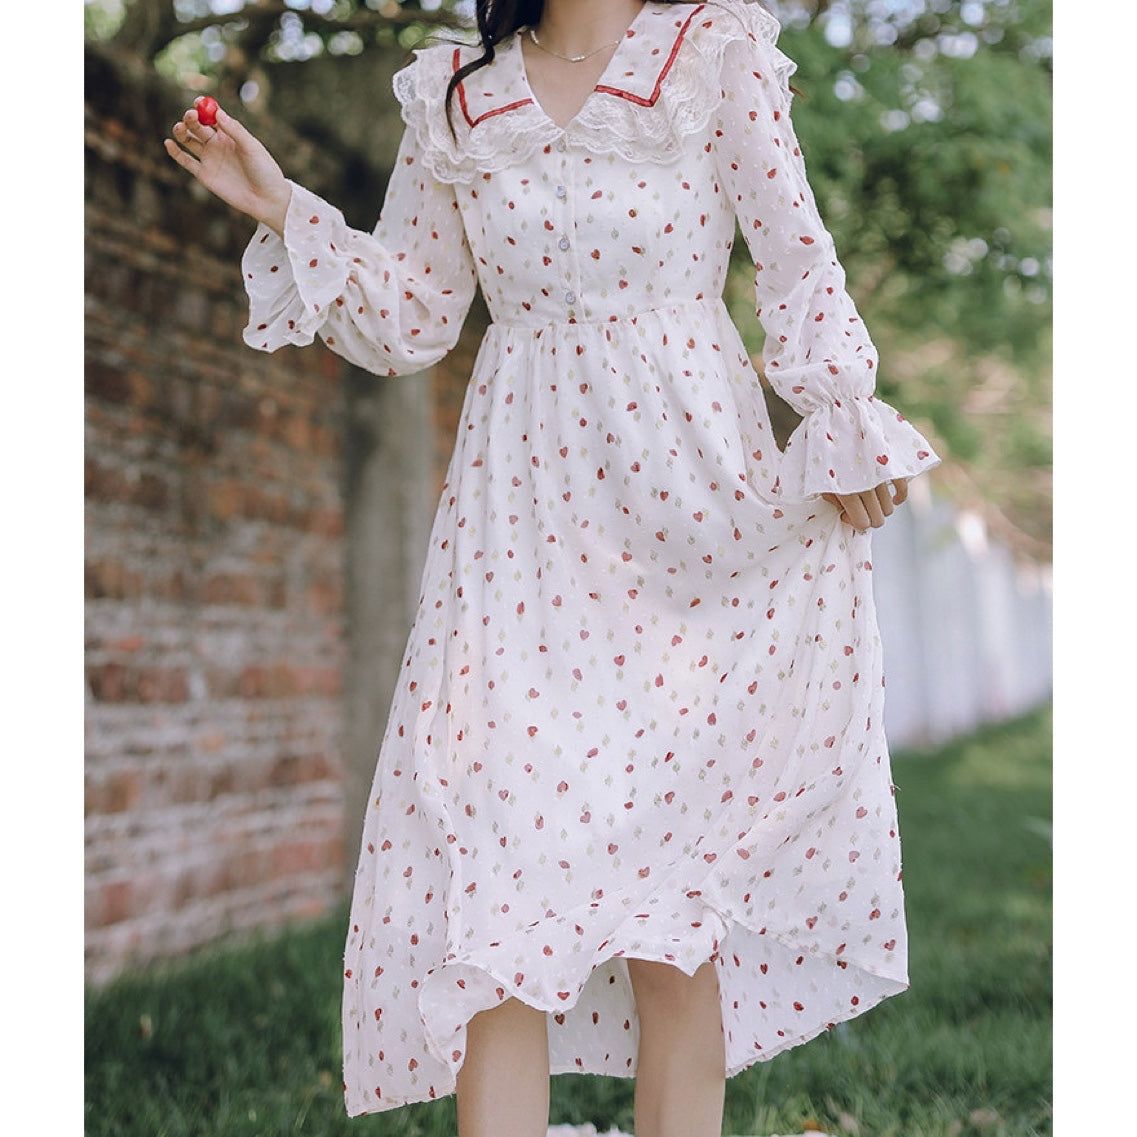 Vintage-style Romantic Heart Print Cottage Dress | Cottagecore Dress